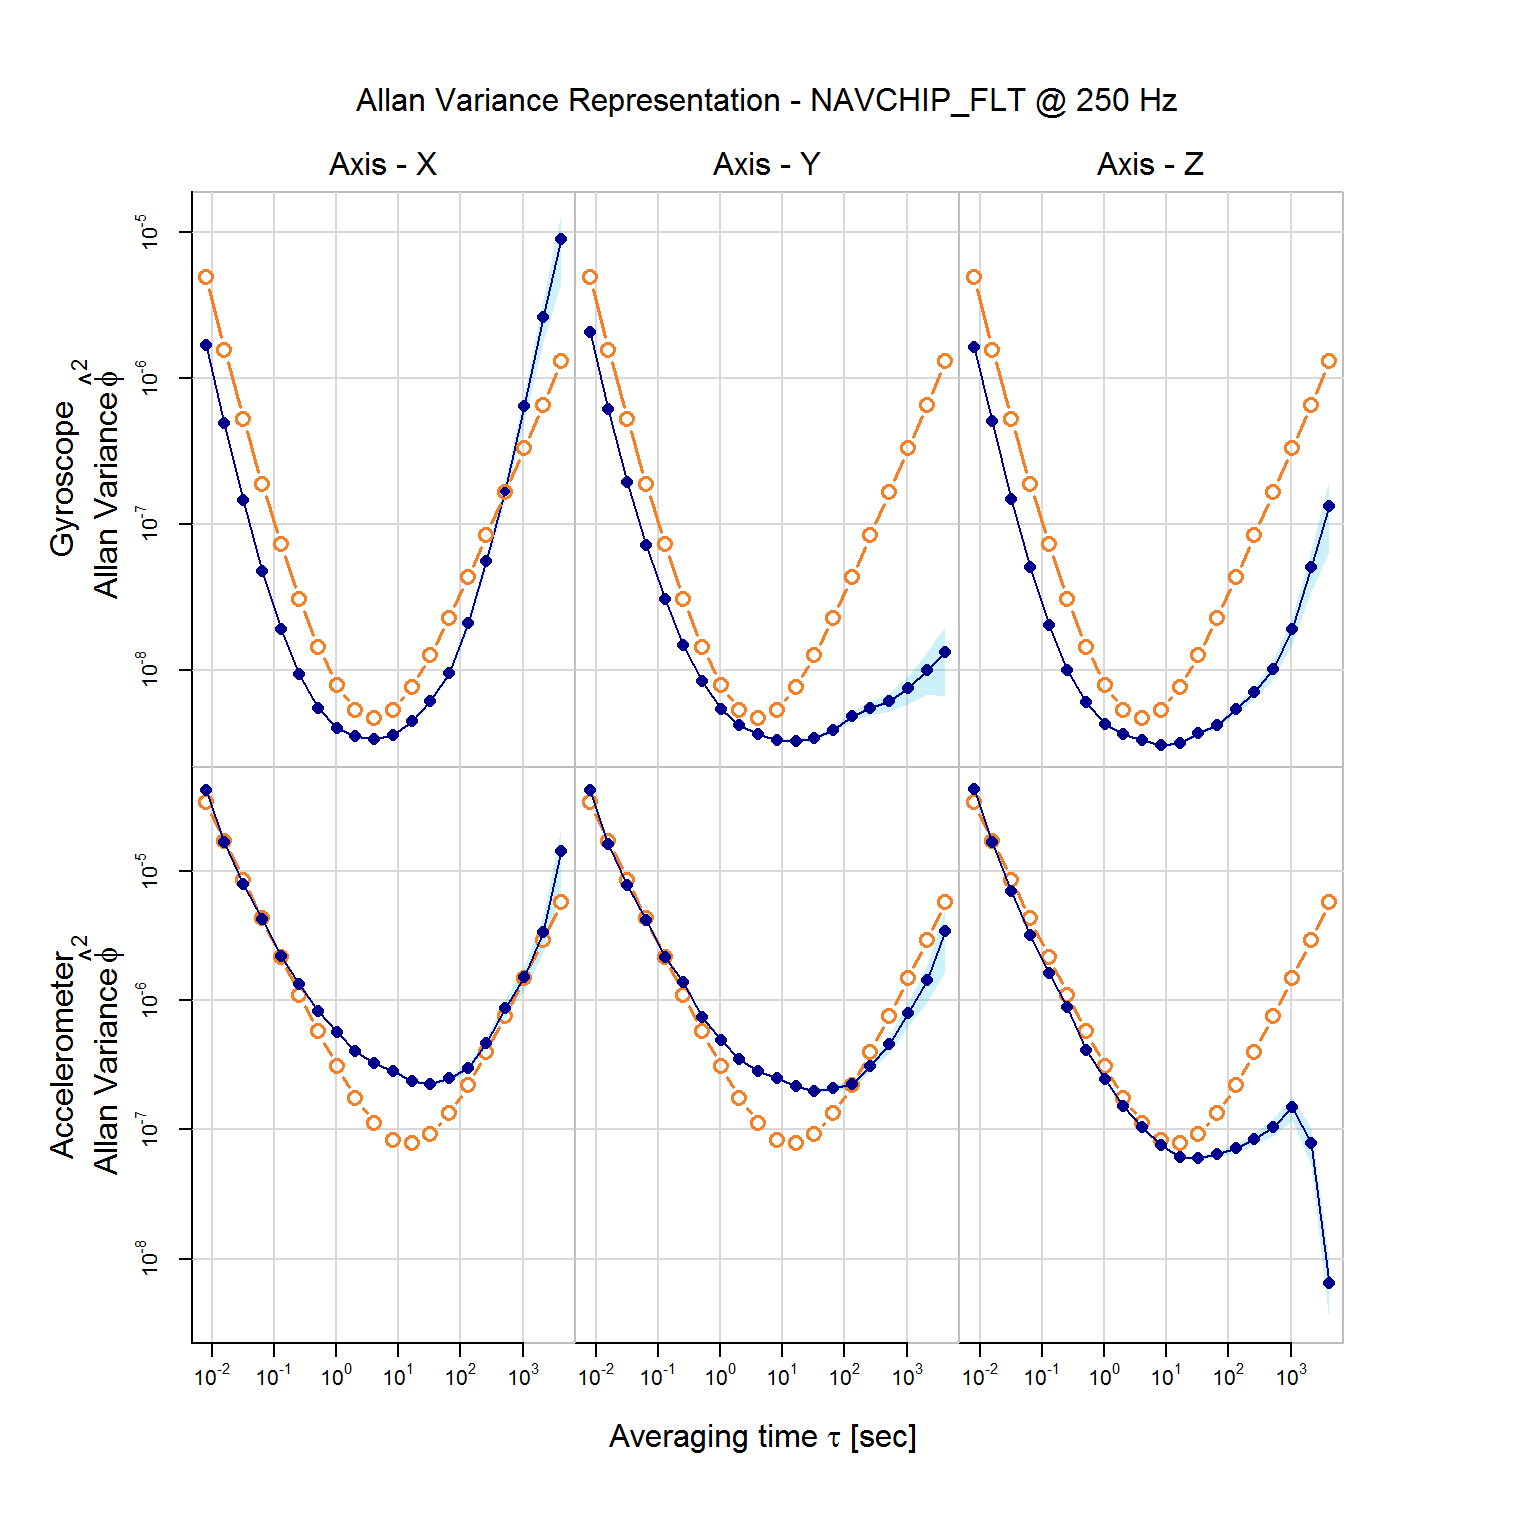 Empirical AV with AV implied by the latent model